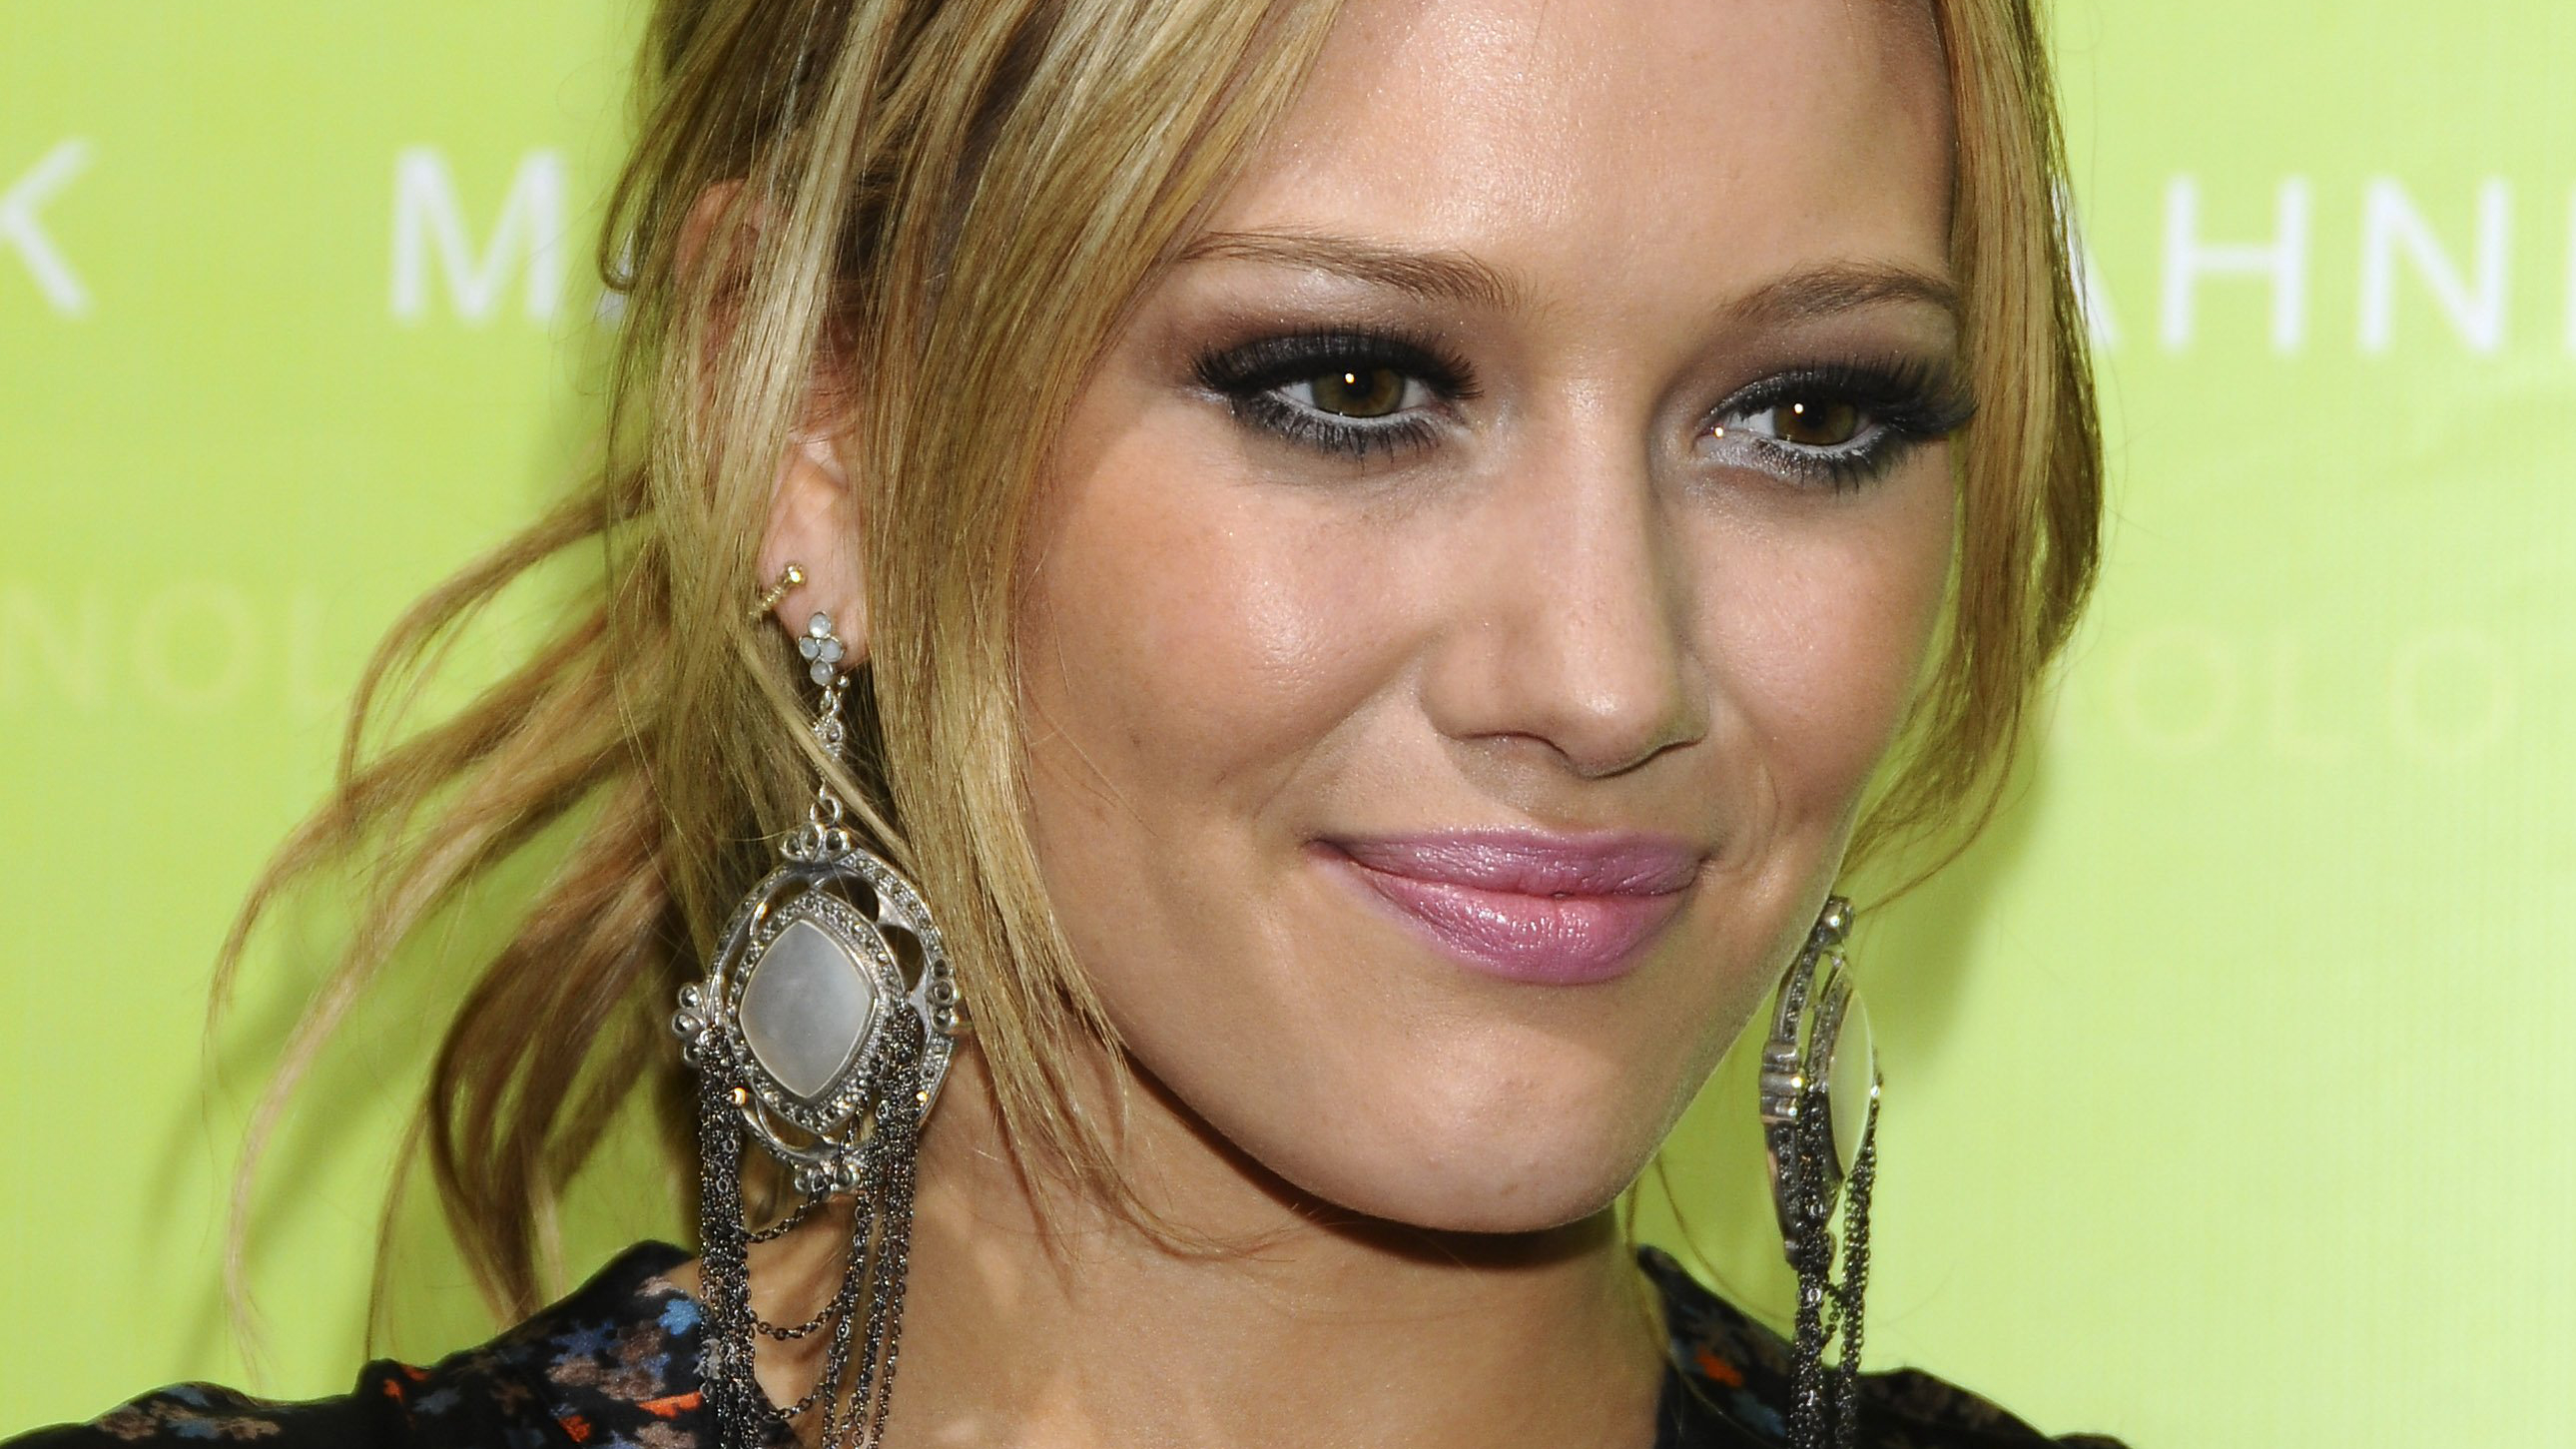 Descarga gratuita de fondo de pantalla para móvil de Celebridades, Hilary Duff.